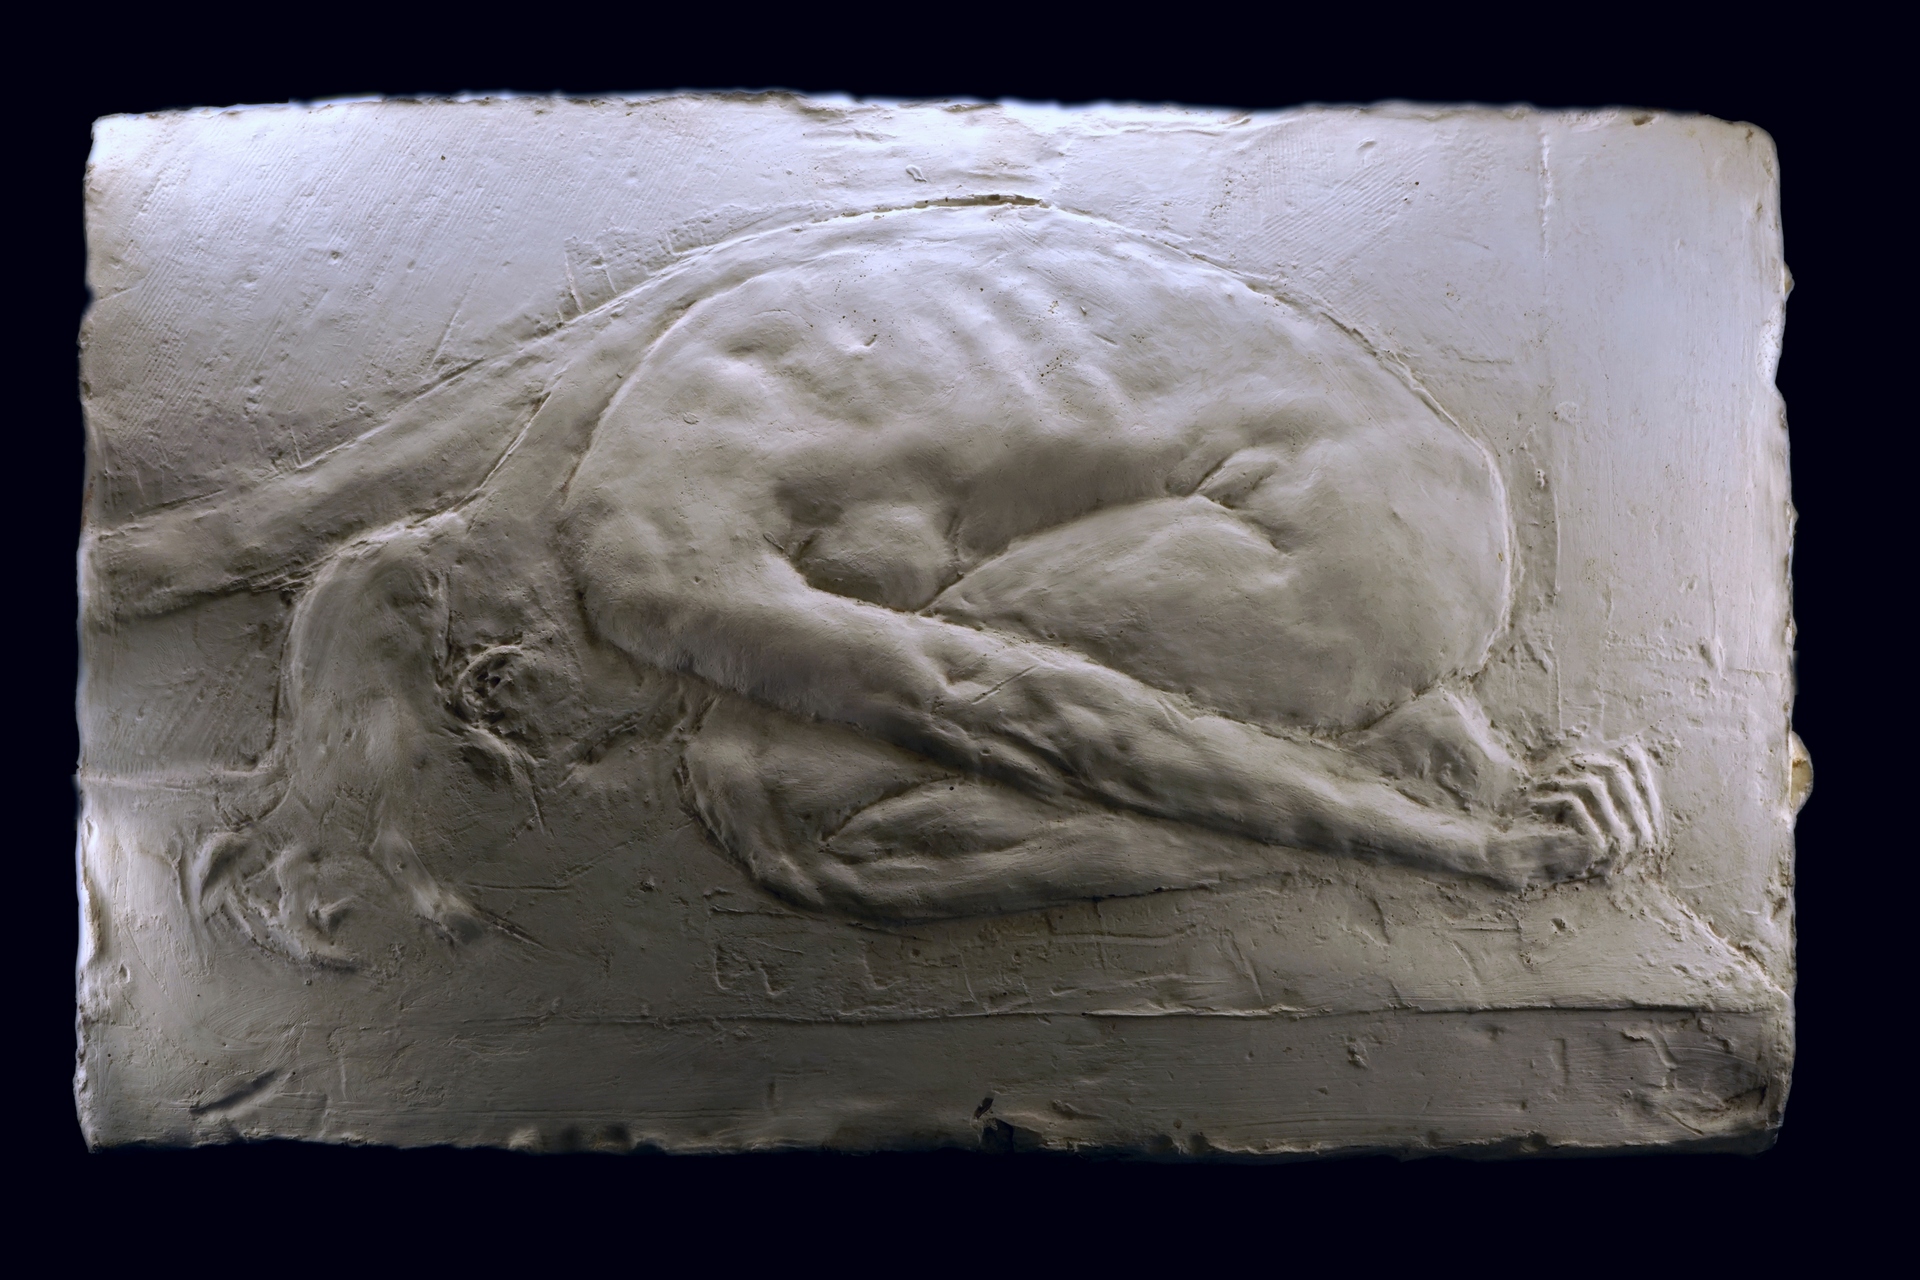 Anna Mandziak - zdjęcie przedstawia subtelną płaskorzeźbę aktu kobiecego ujętego w pozycji skulonej, jakby w ukłonie, wykonana w gipsie.